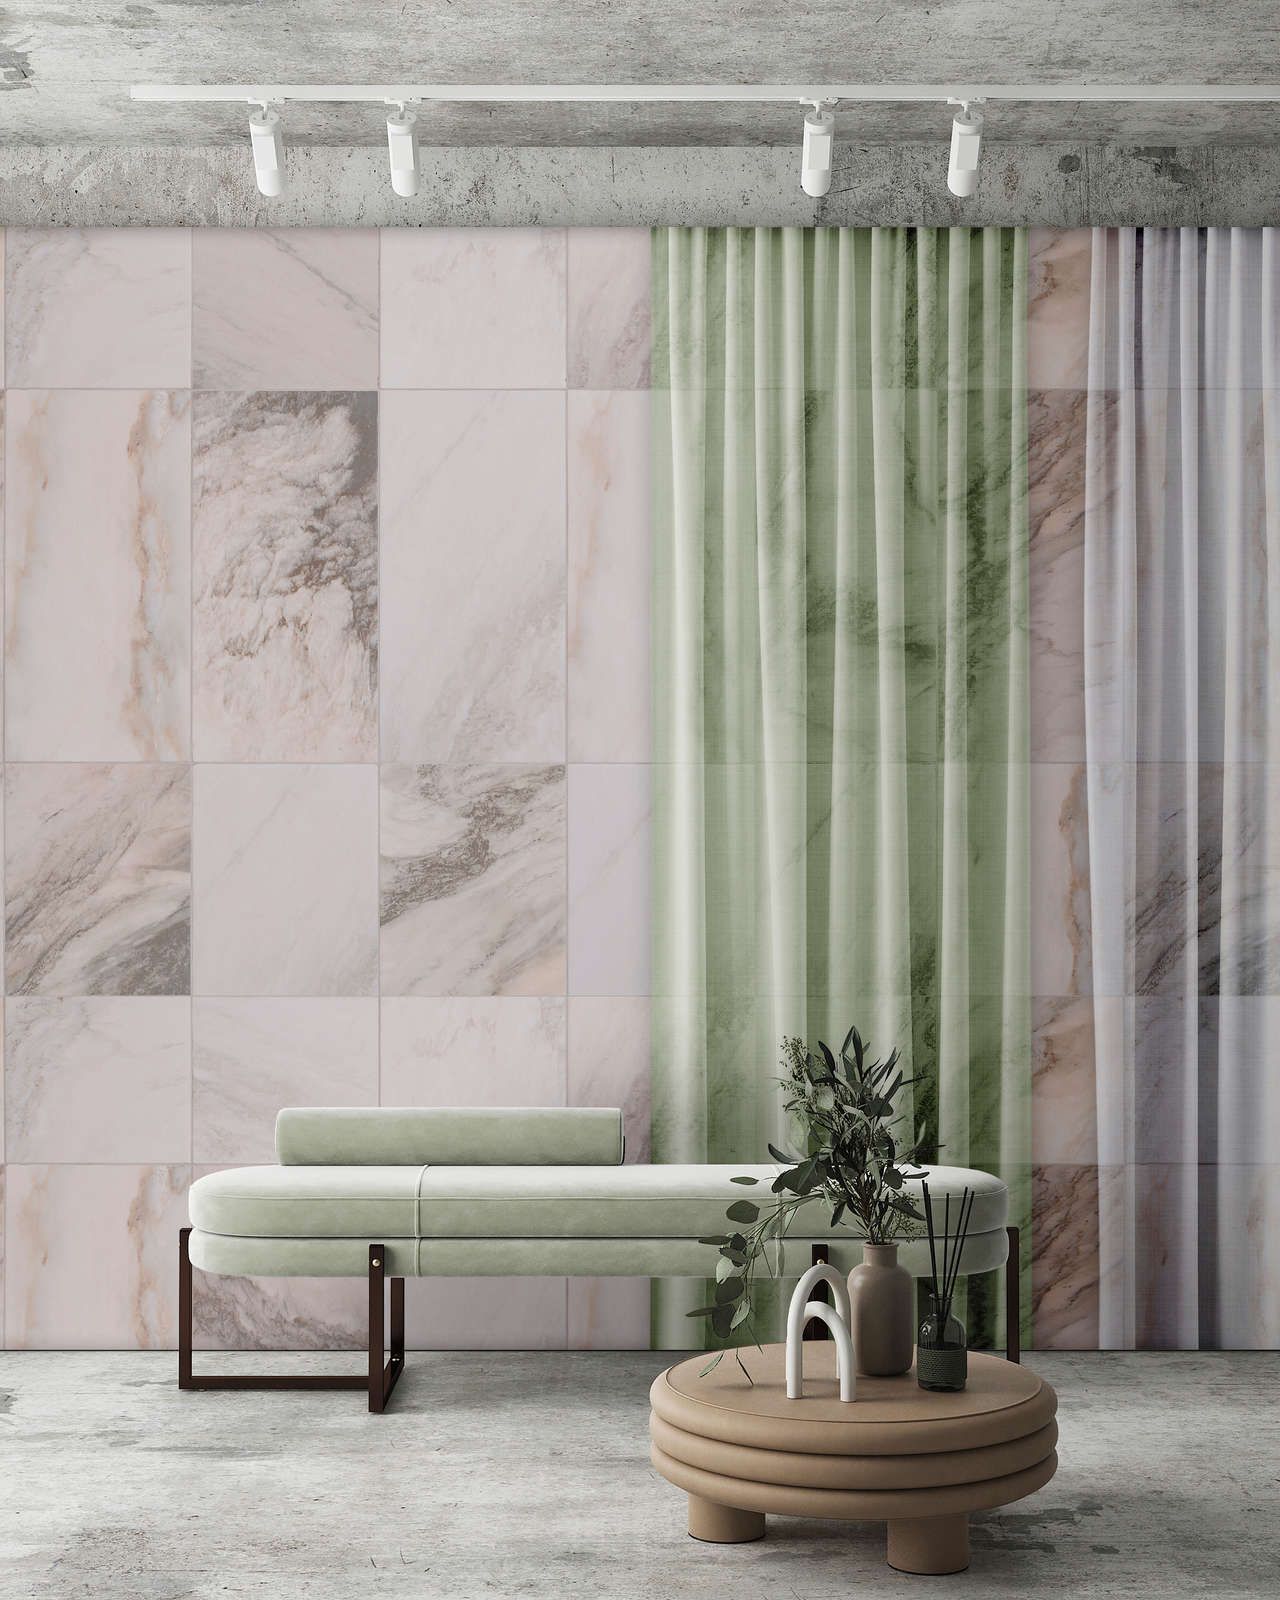             Digital behang »nova 2« - Pastelkleurige gordijnen tegen een beige marmeren muur - Gladde, licht glanzende premium vliesstof
        